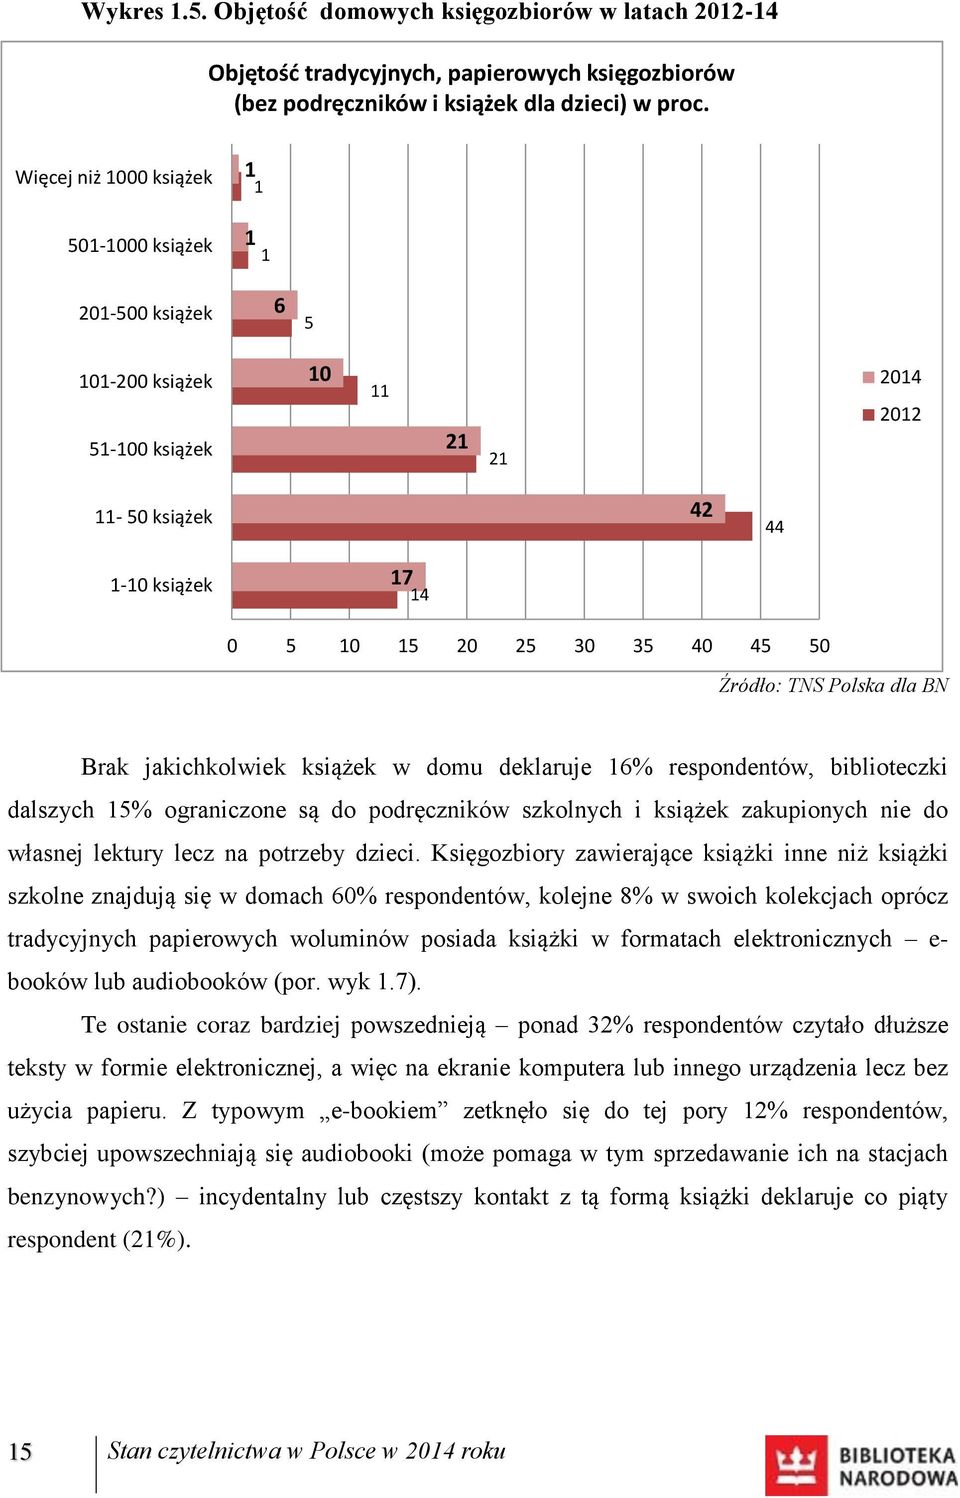 TNS Polska dla BN Brak jakichkolwiek książek w domu deklaruje 16% respondentów, biblioteczki dalszych 15% ograniczone są do podręczników szkolnych i książek zakupionych nie do własnej lektury lecz na